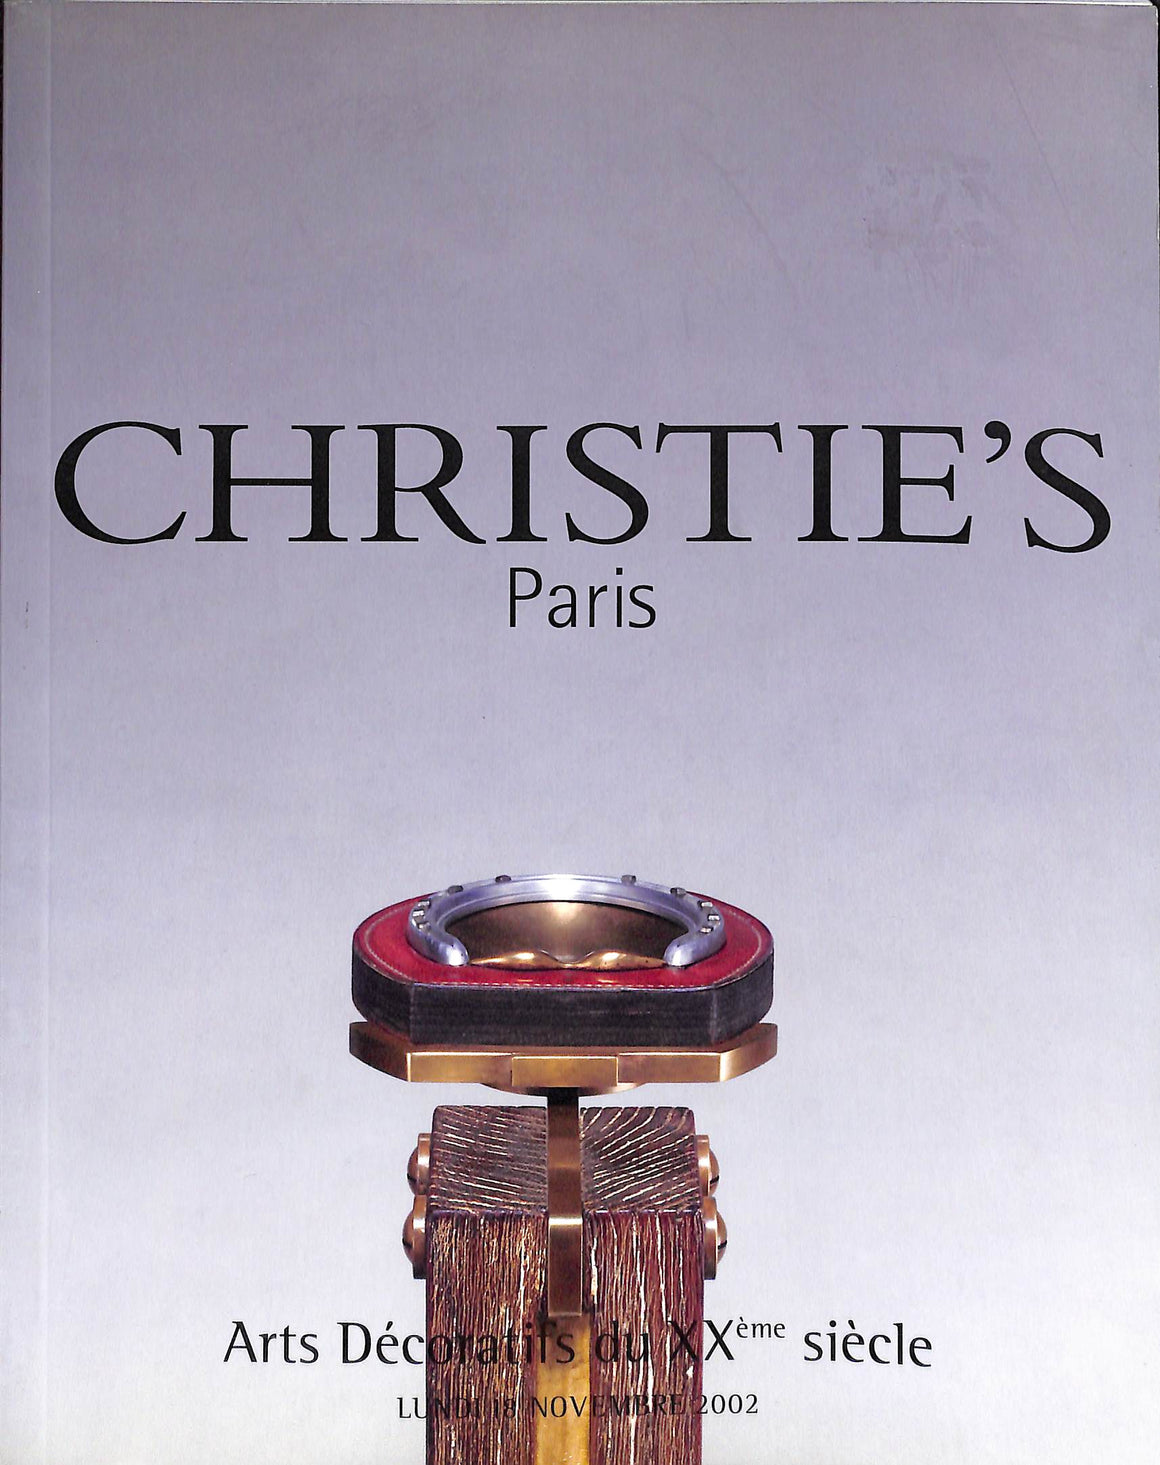 Arts Decoratifs Du XXeme Siecle - 18 Novembre 2002 Christie's Paris